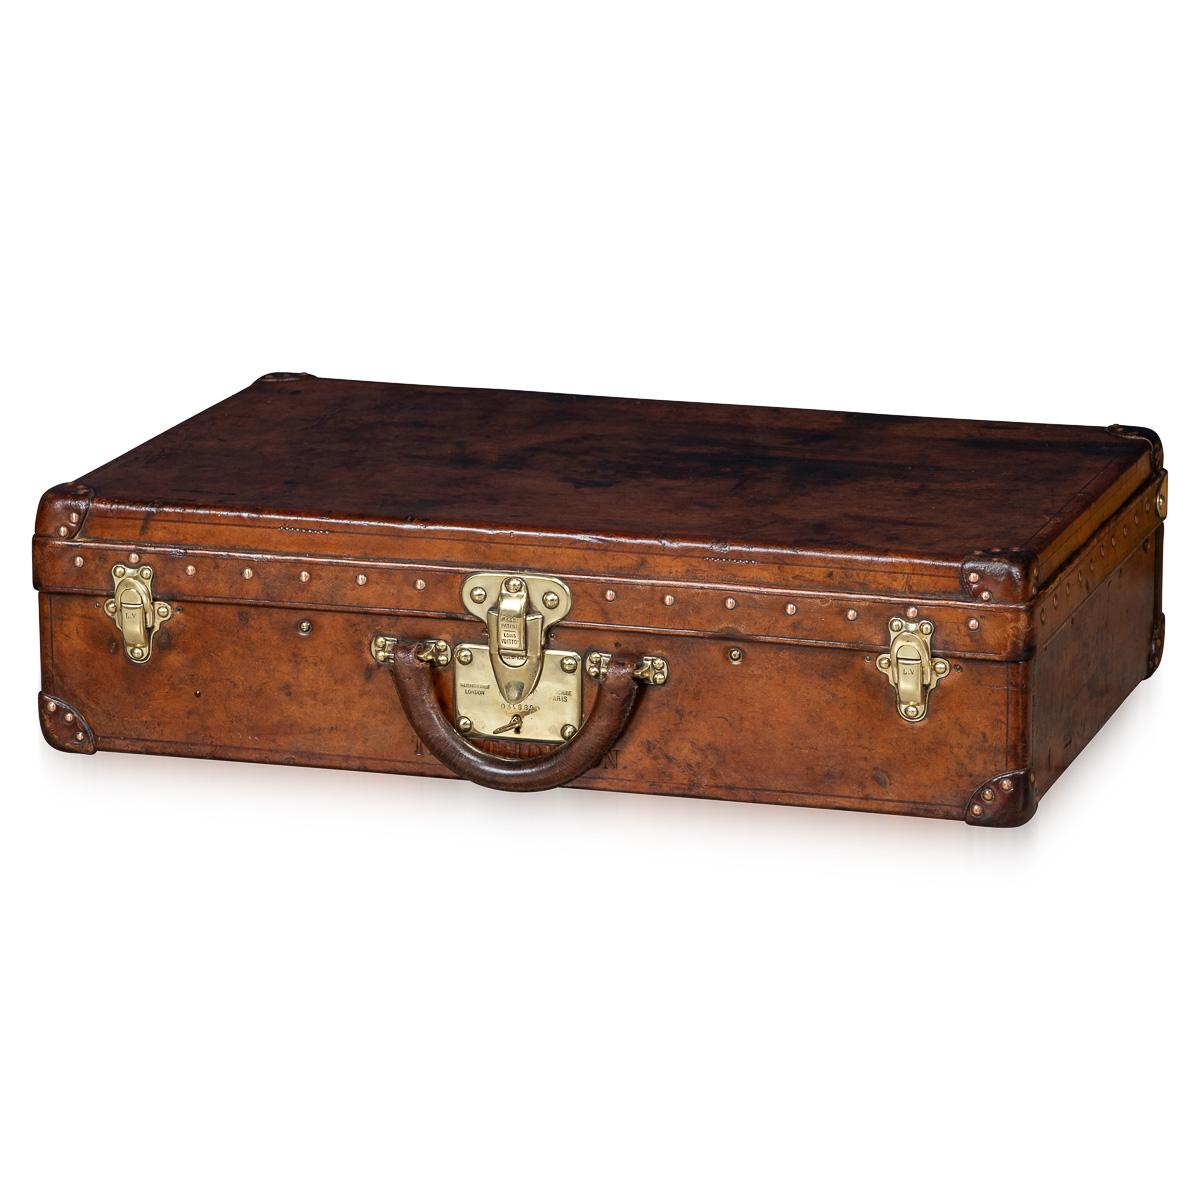 Une valise Louis Vuitton très inhabituelle et exceptionnellement rare, datant des premières années du 20e siècle, se distingue non pas par la toile du monogramme mondialement connu, mais par un revêtement distinctif fabriqué à partir d'un morceau